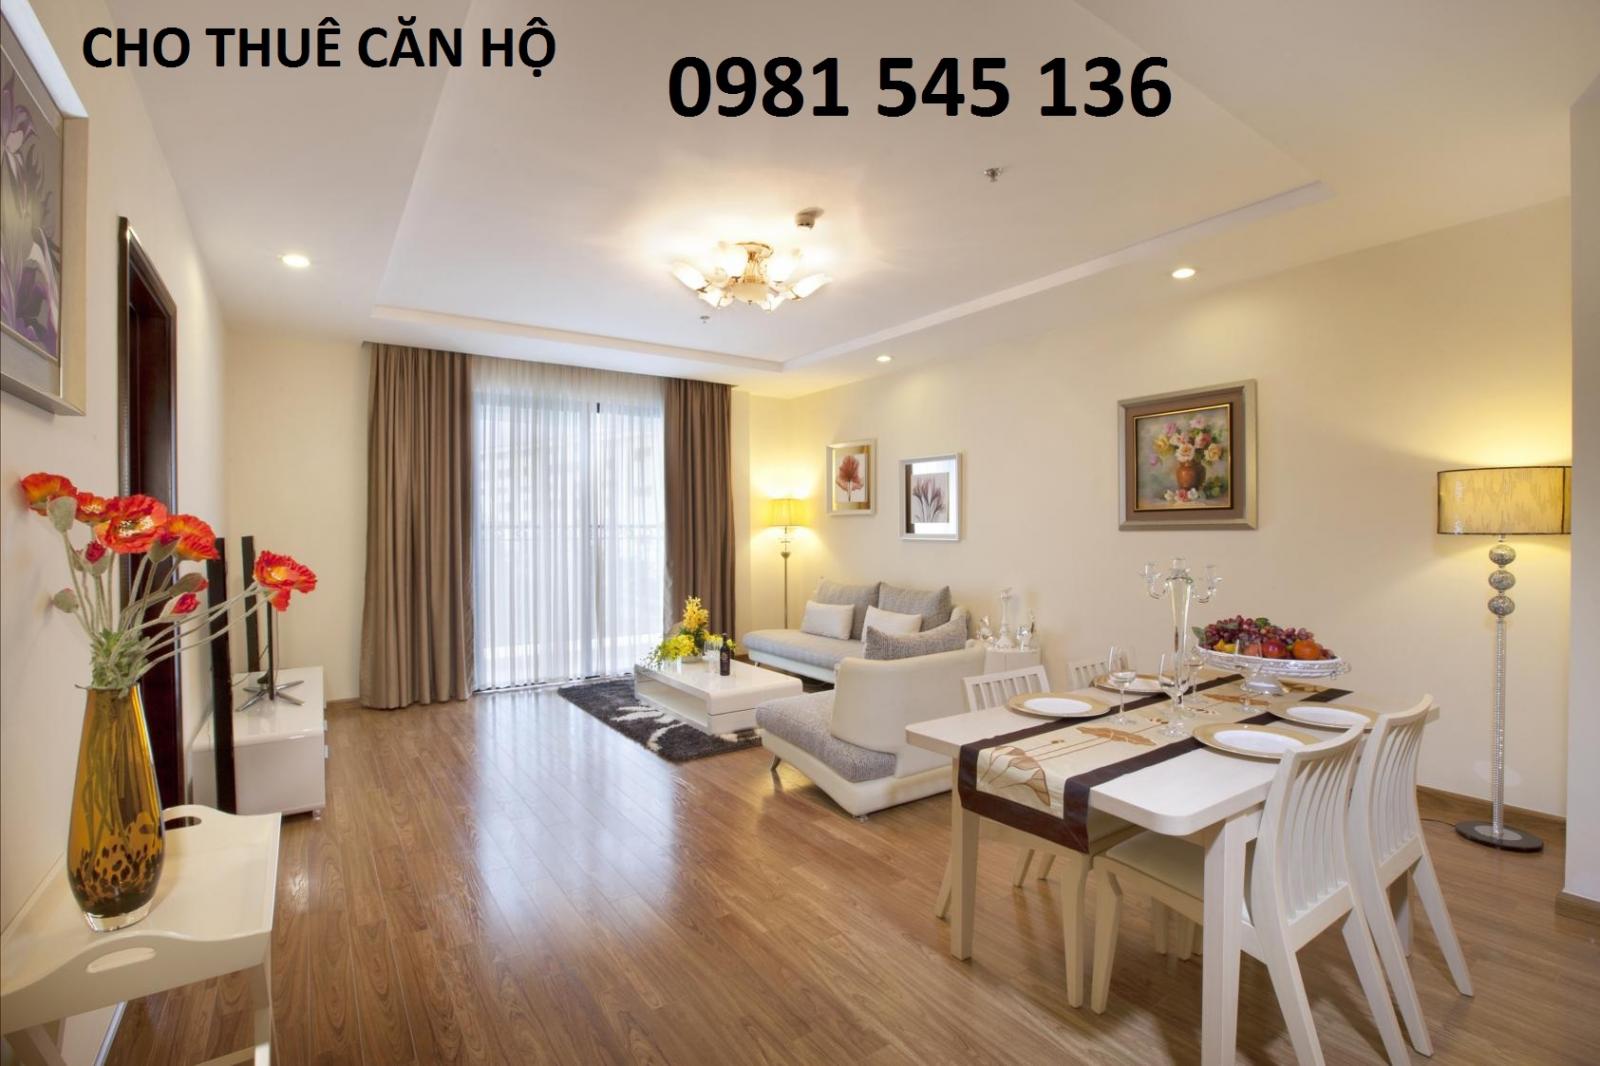 Cho thuê căn hộ chung cư phố Đội Cấn, Ba Đình, 80m2 2PN, nội thất rất đẹp, 12tr/th. LH 0981 545 136
 962454